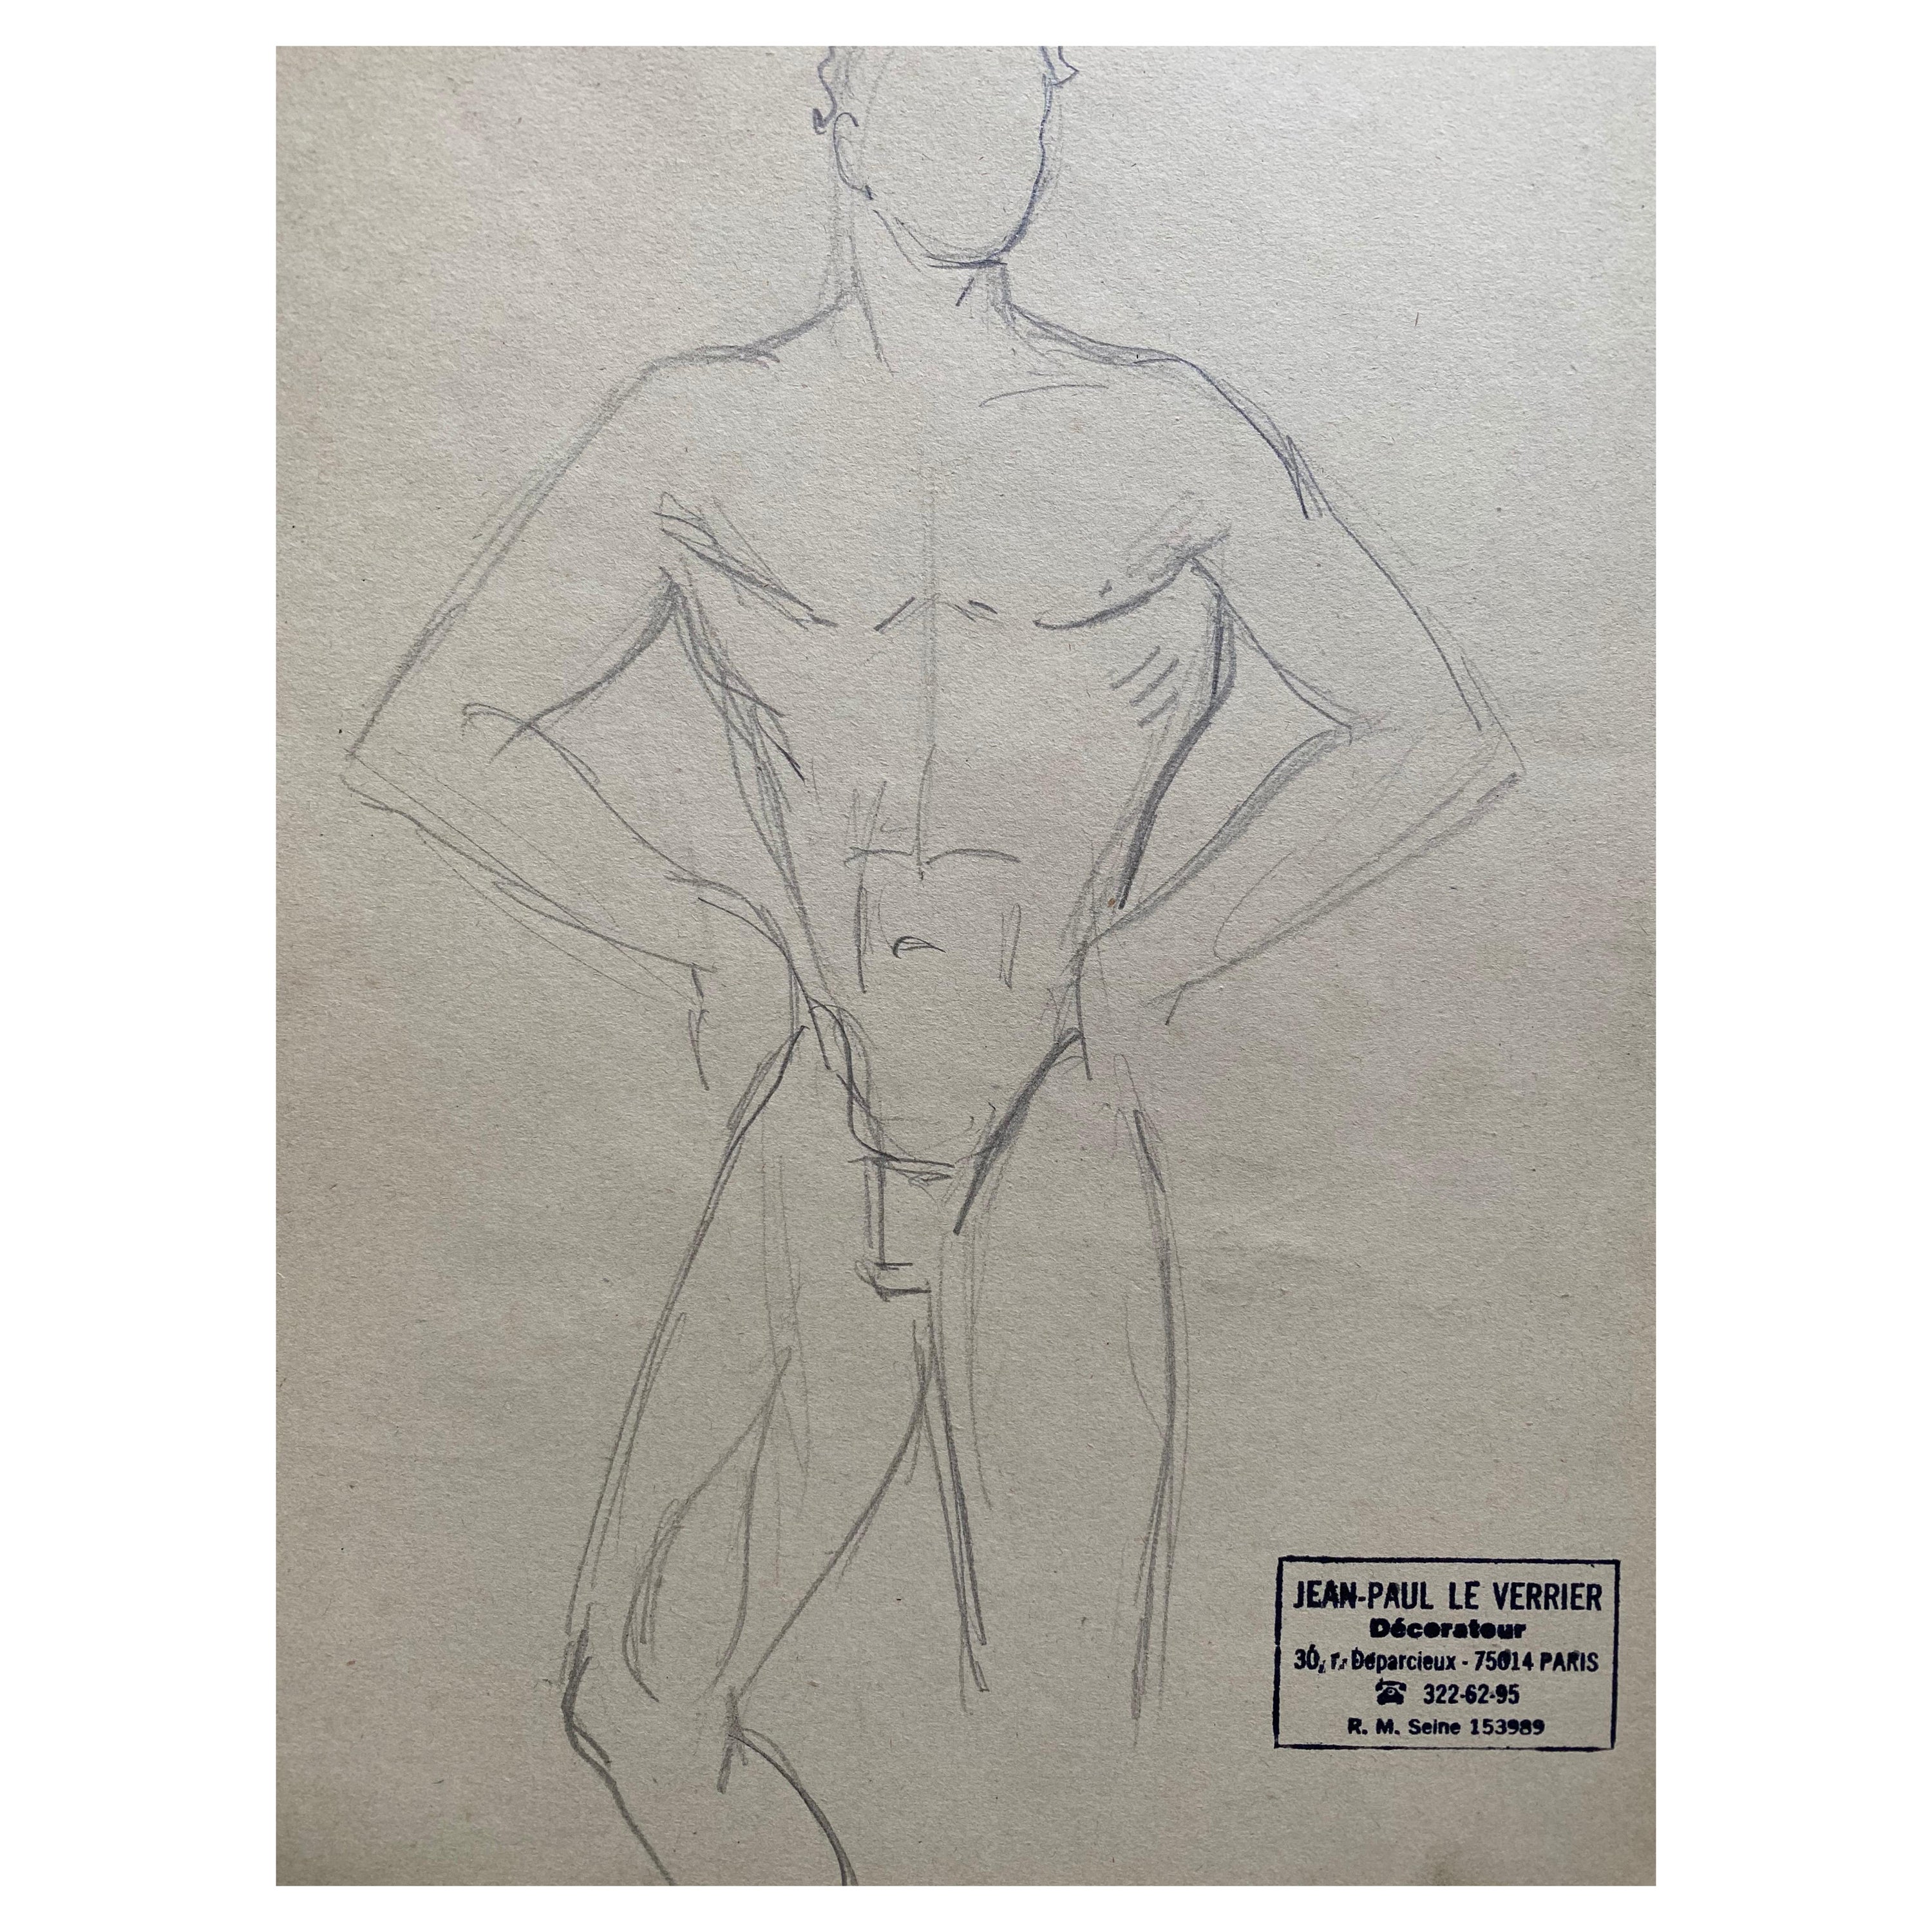 Il s'agit d'une esquisse de dessin au trait d'origine française du milieu du 20e siècle représentant un homme nu, estampillée